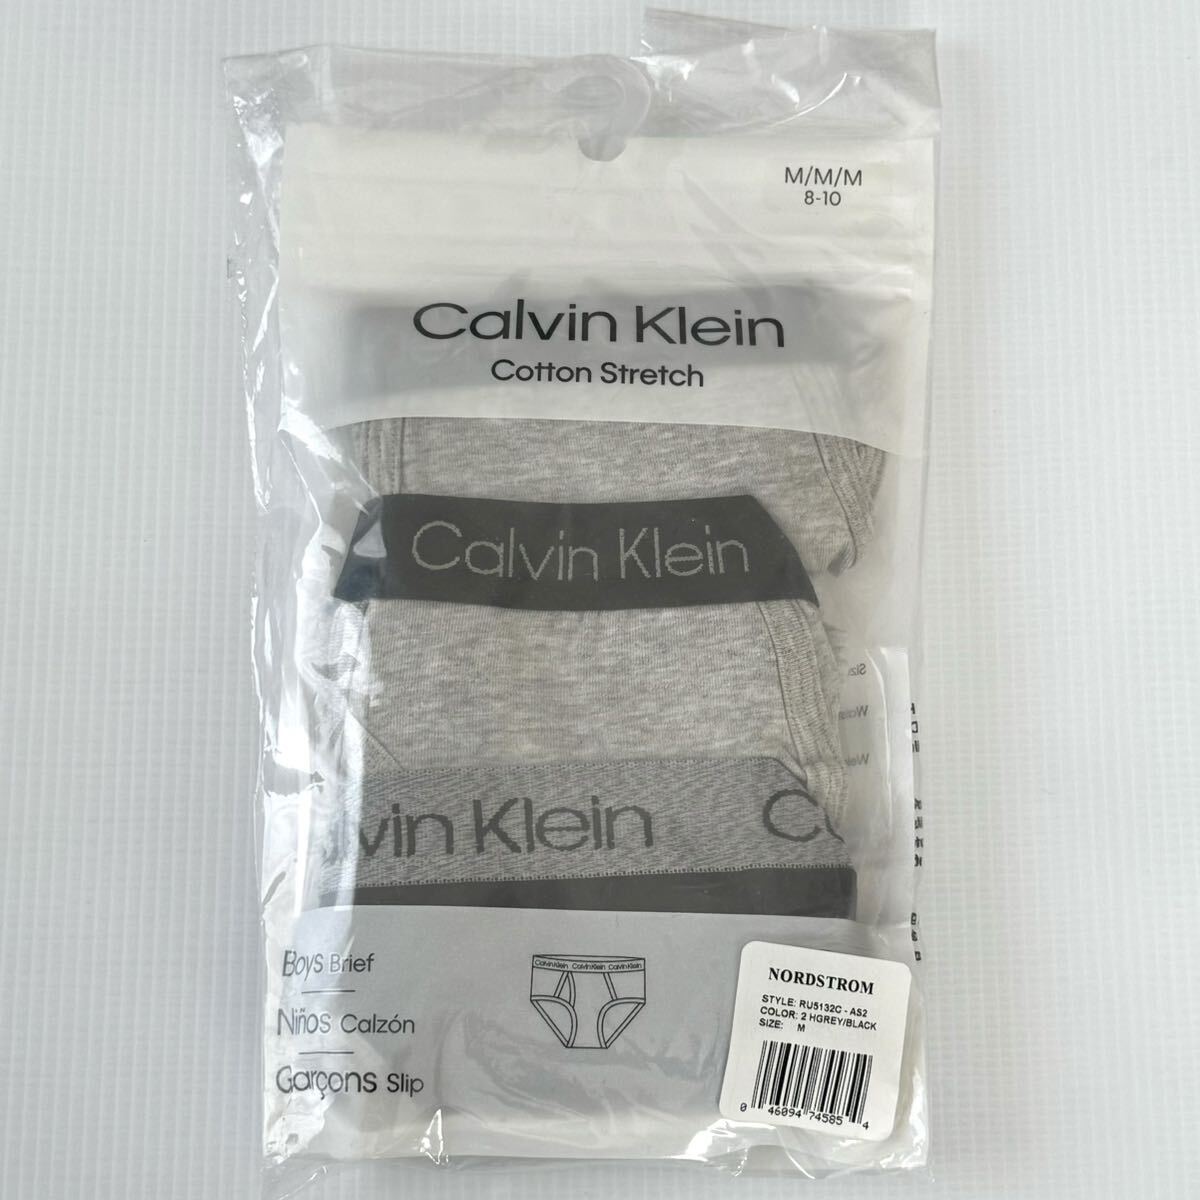  Calvin Klein for children cotton stretch Brief 3 pieces set M size 